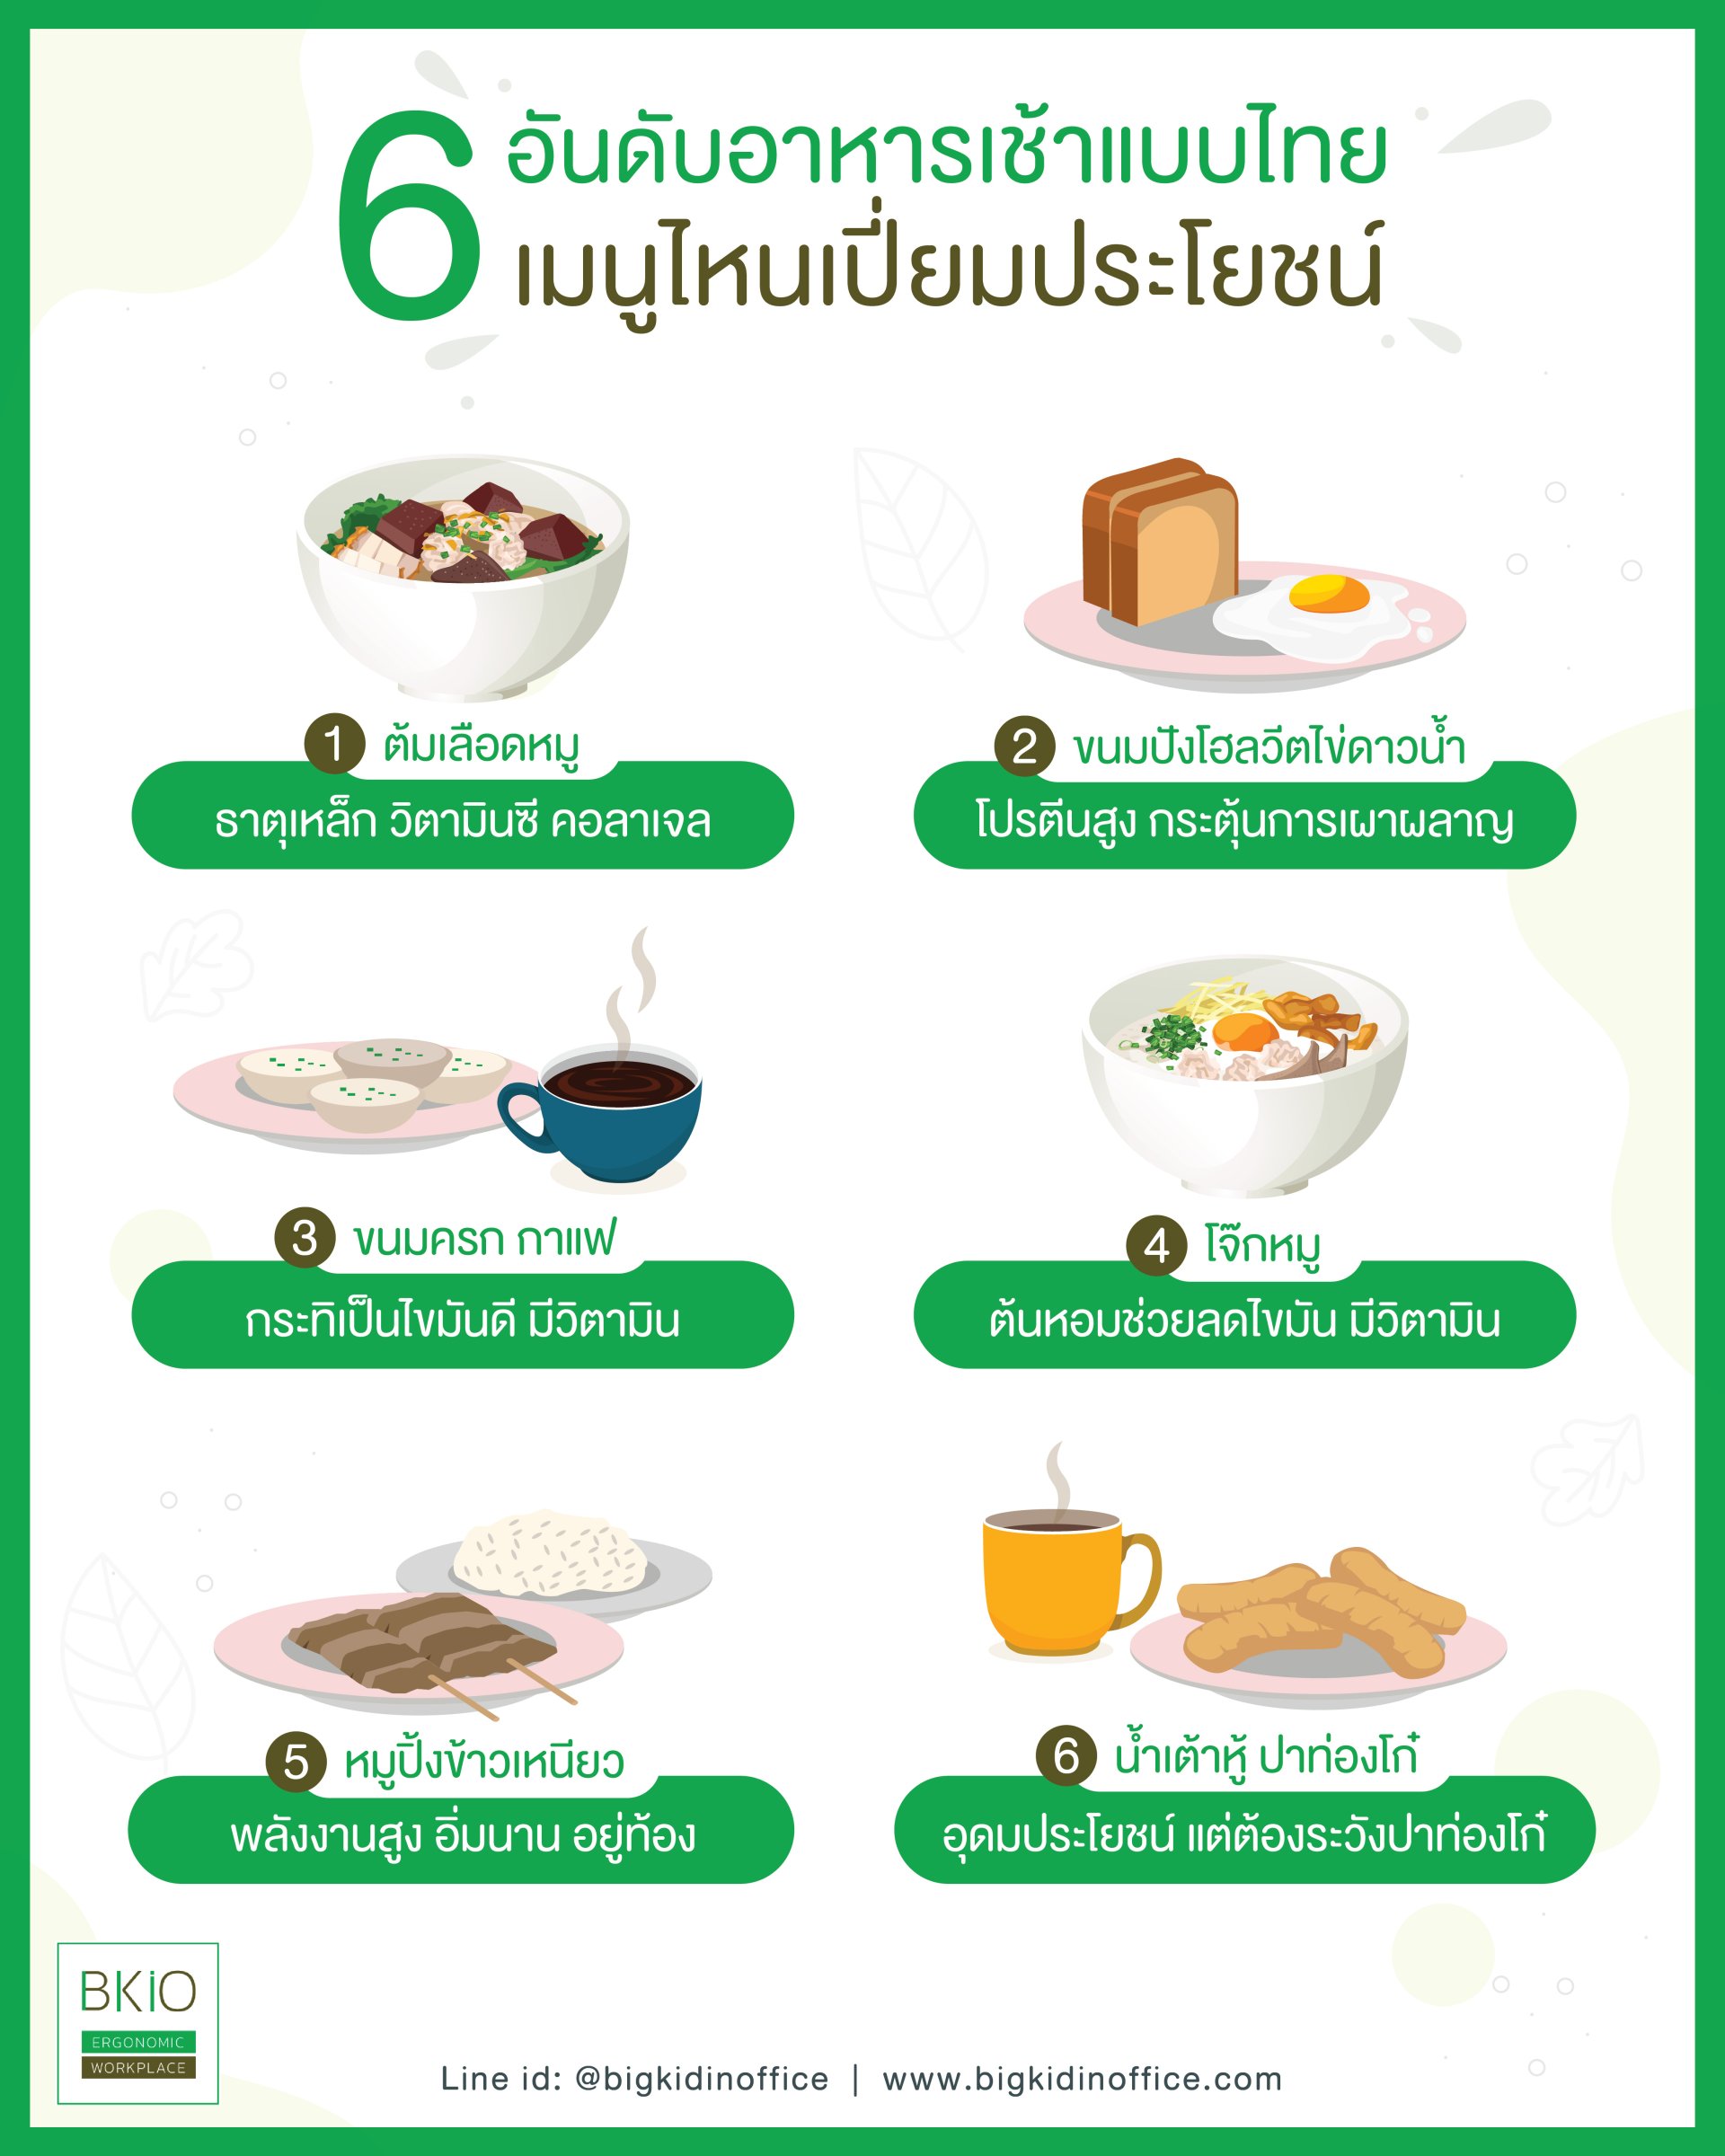 6 อันดับอาหารเช้าแบบไทย เมนูไหนเปี่ยมประโยชน์มากที่สุด - Bigkidinoffice